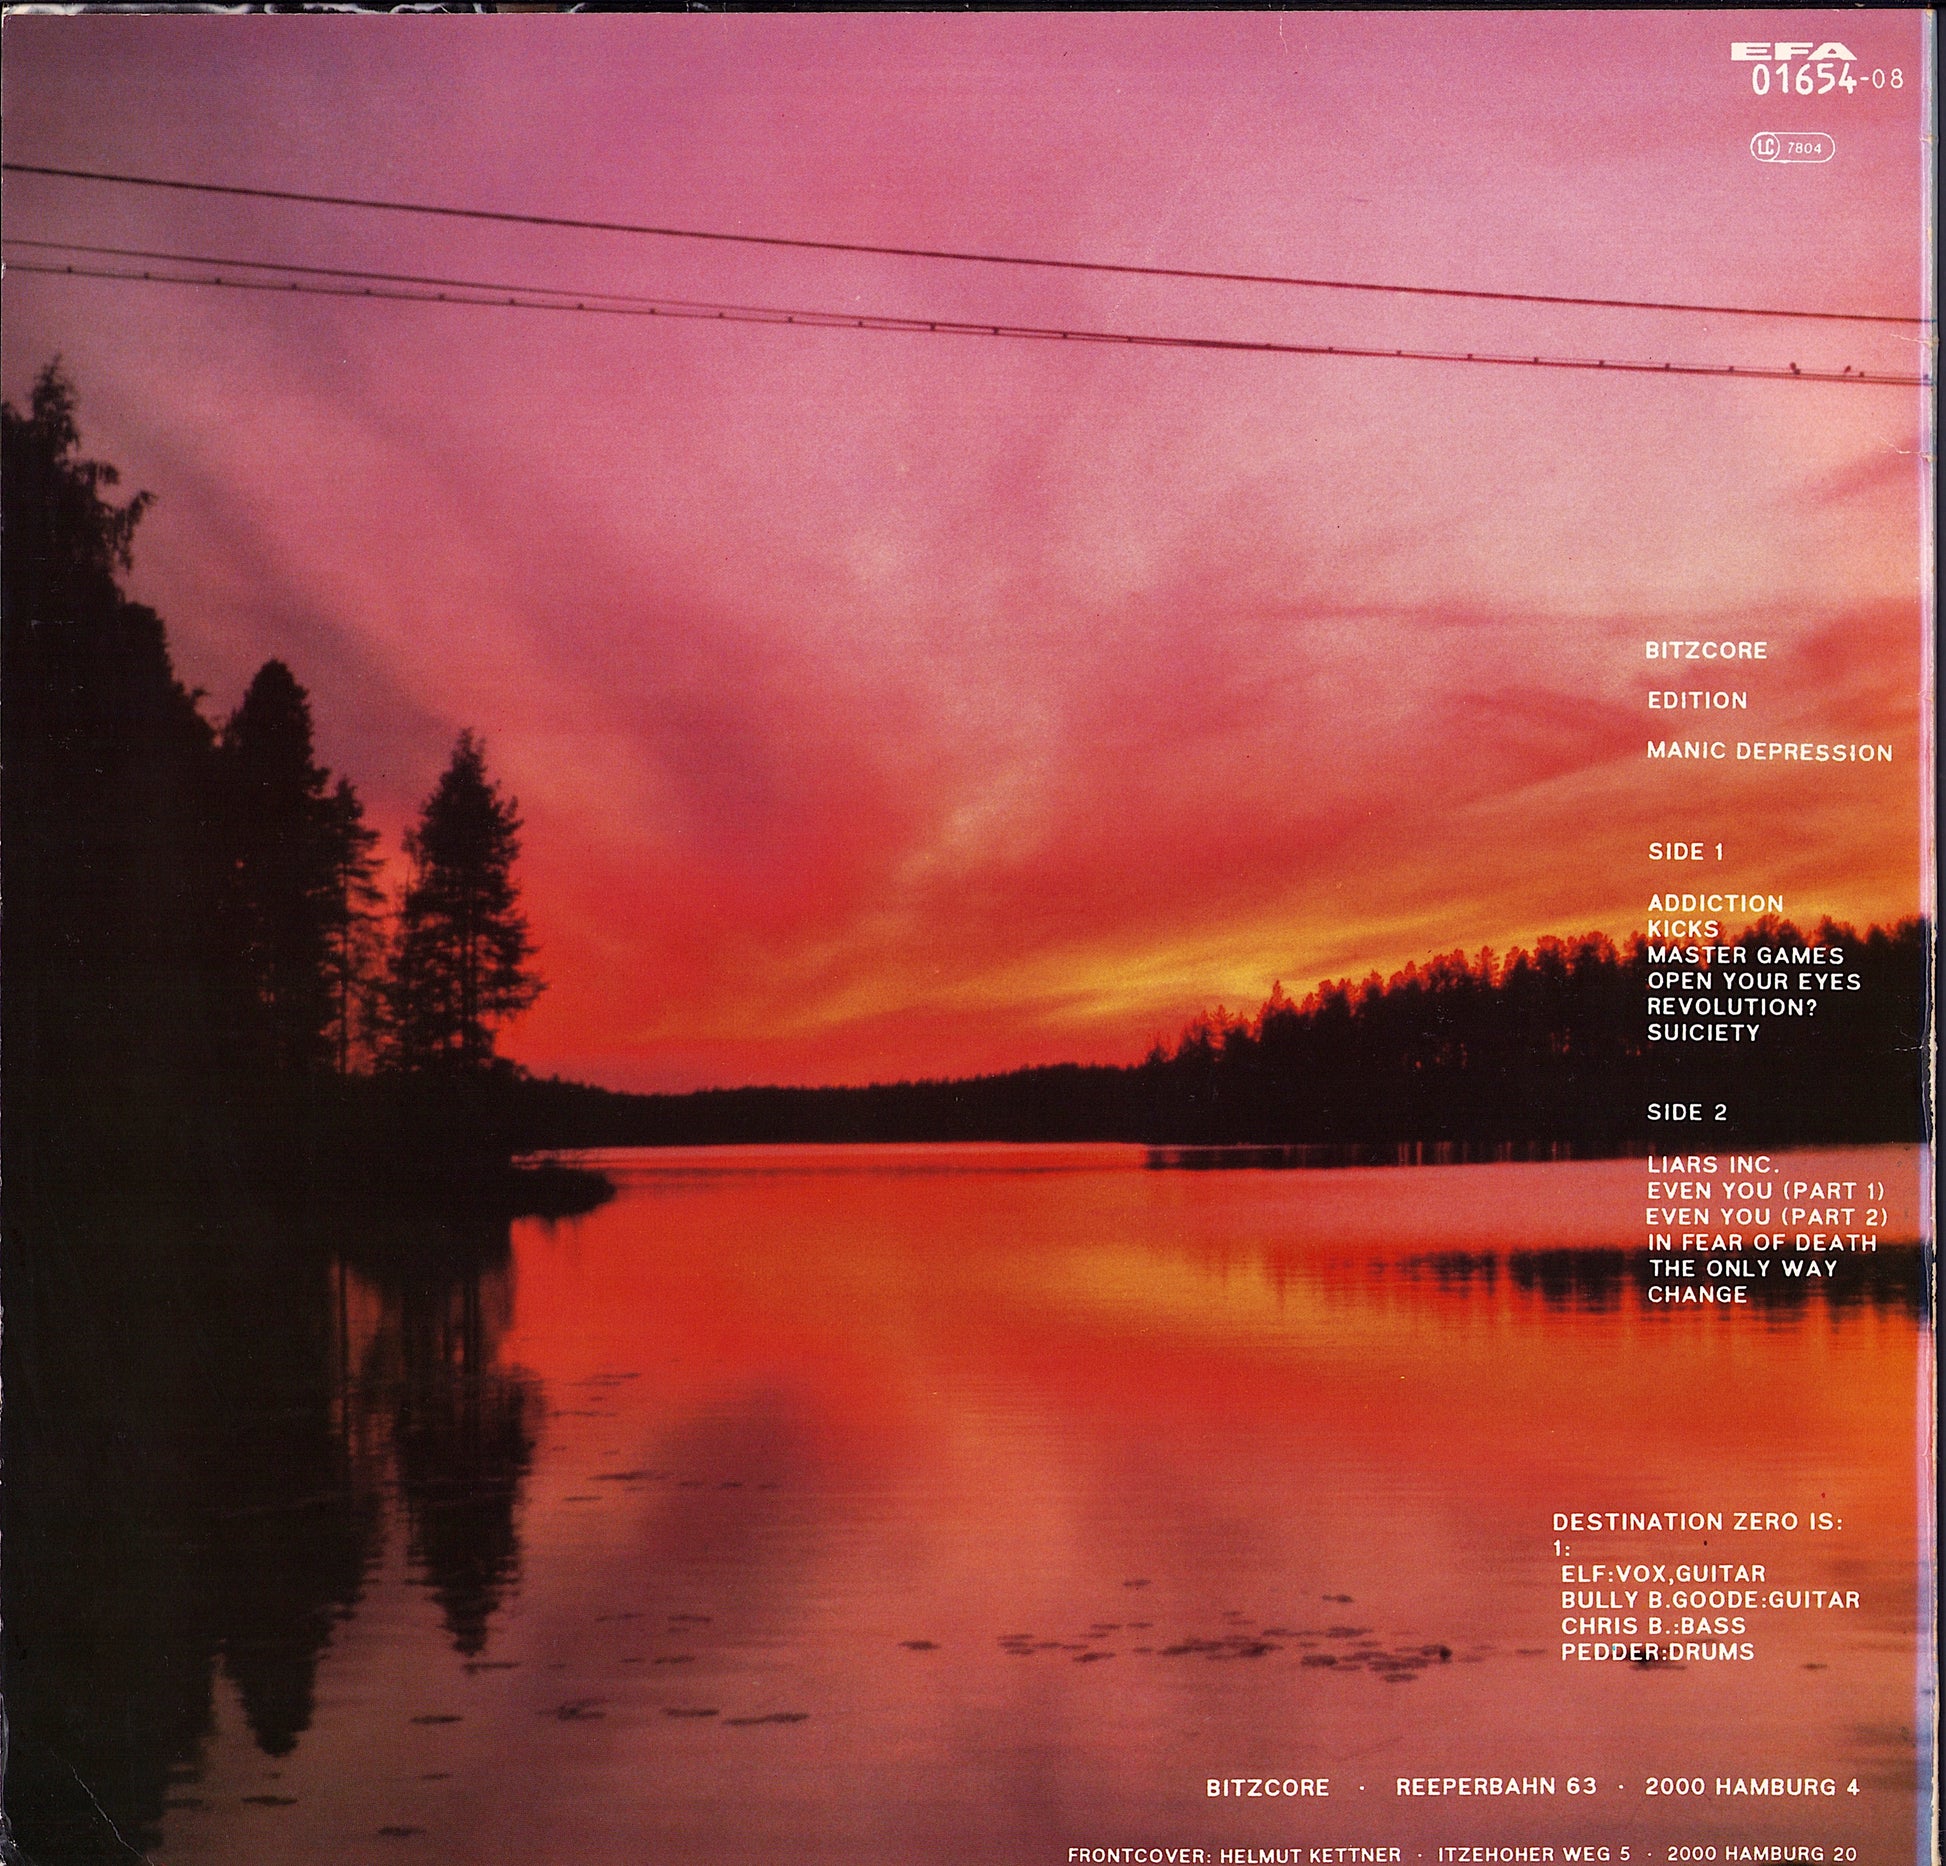 Destination Zero - Suiciety Vinyl LP